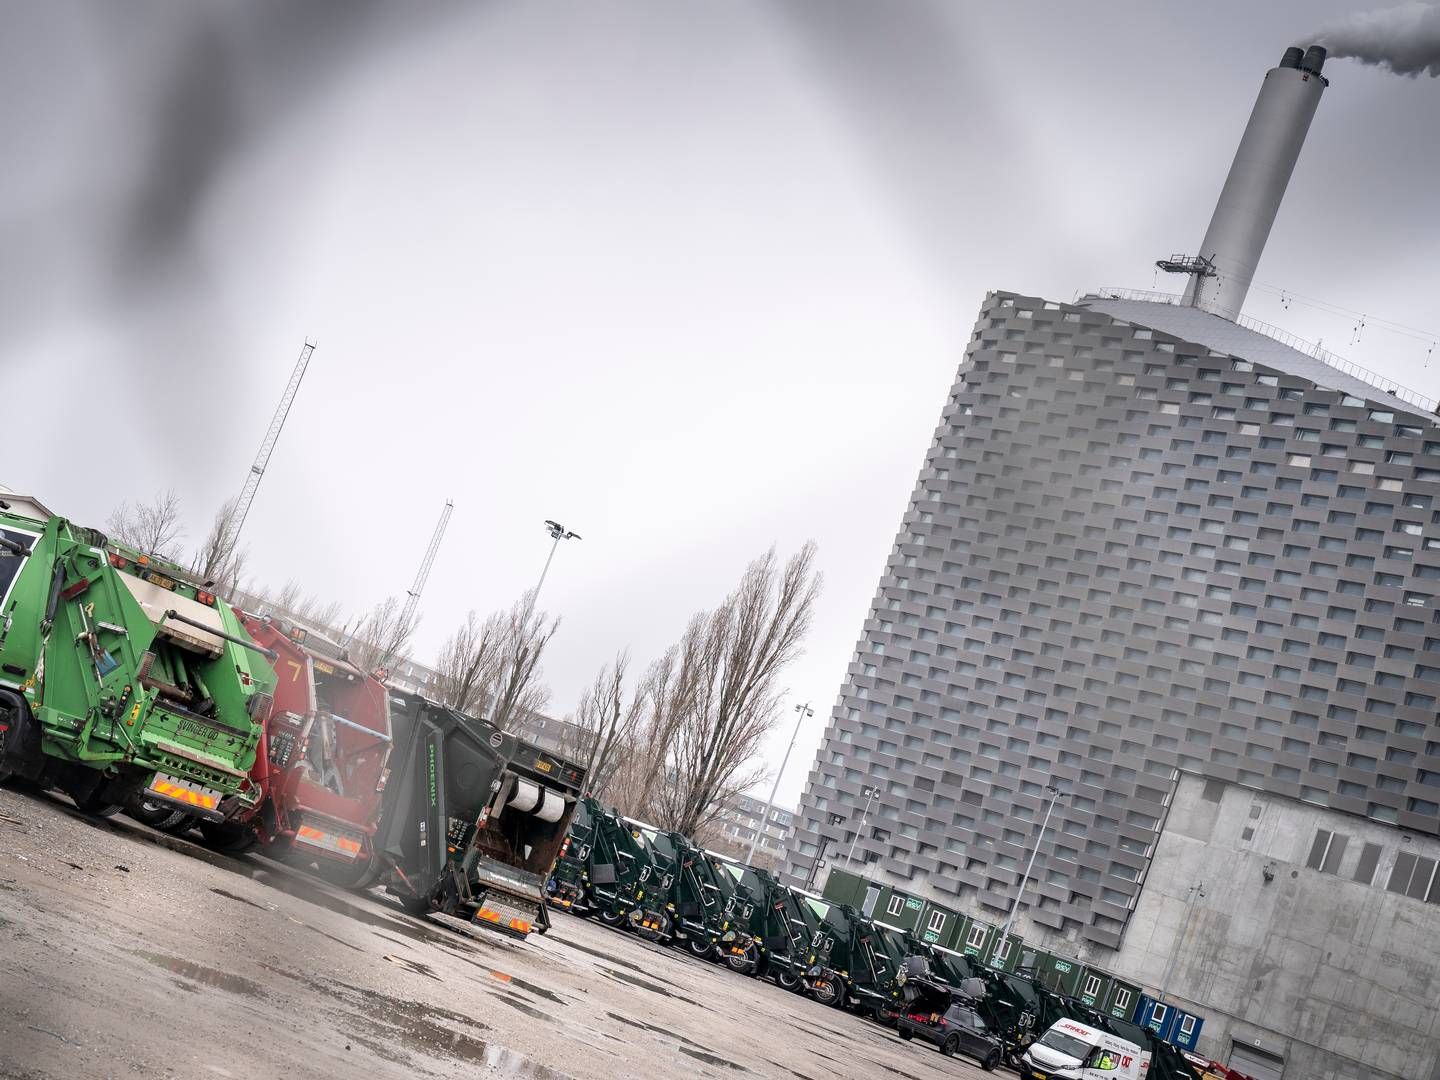 ARC's skraldebiler har stået stille, siden arbejdsnedlæggelsen blev indledt mandag. | Foto: Mads Claus Rasmussen/Ritzau Scanpix